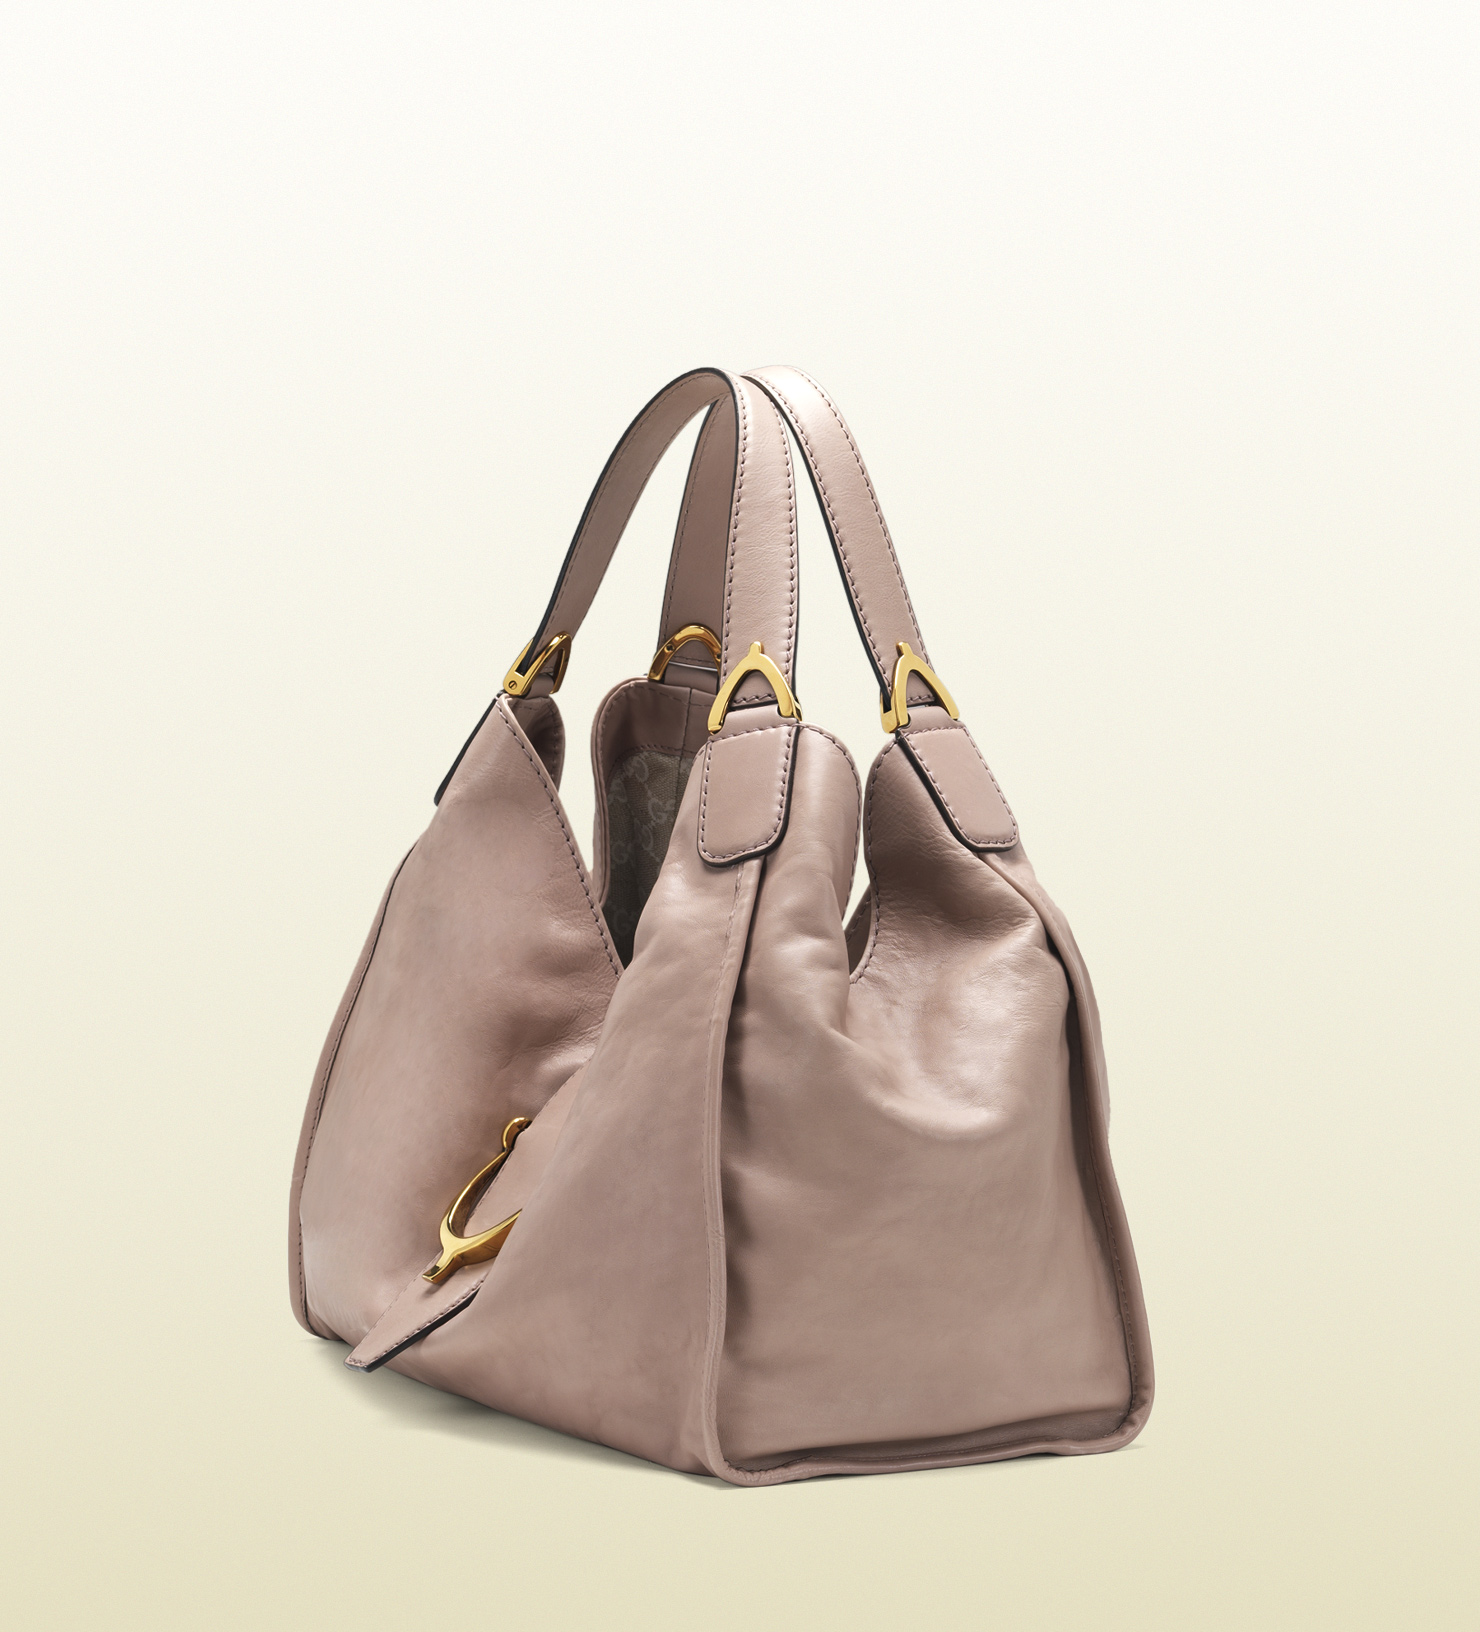 Lyst - Gucci Soft Stirrup Light Pink Leather Shoulder Bag in Pink